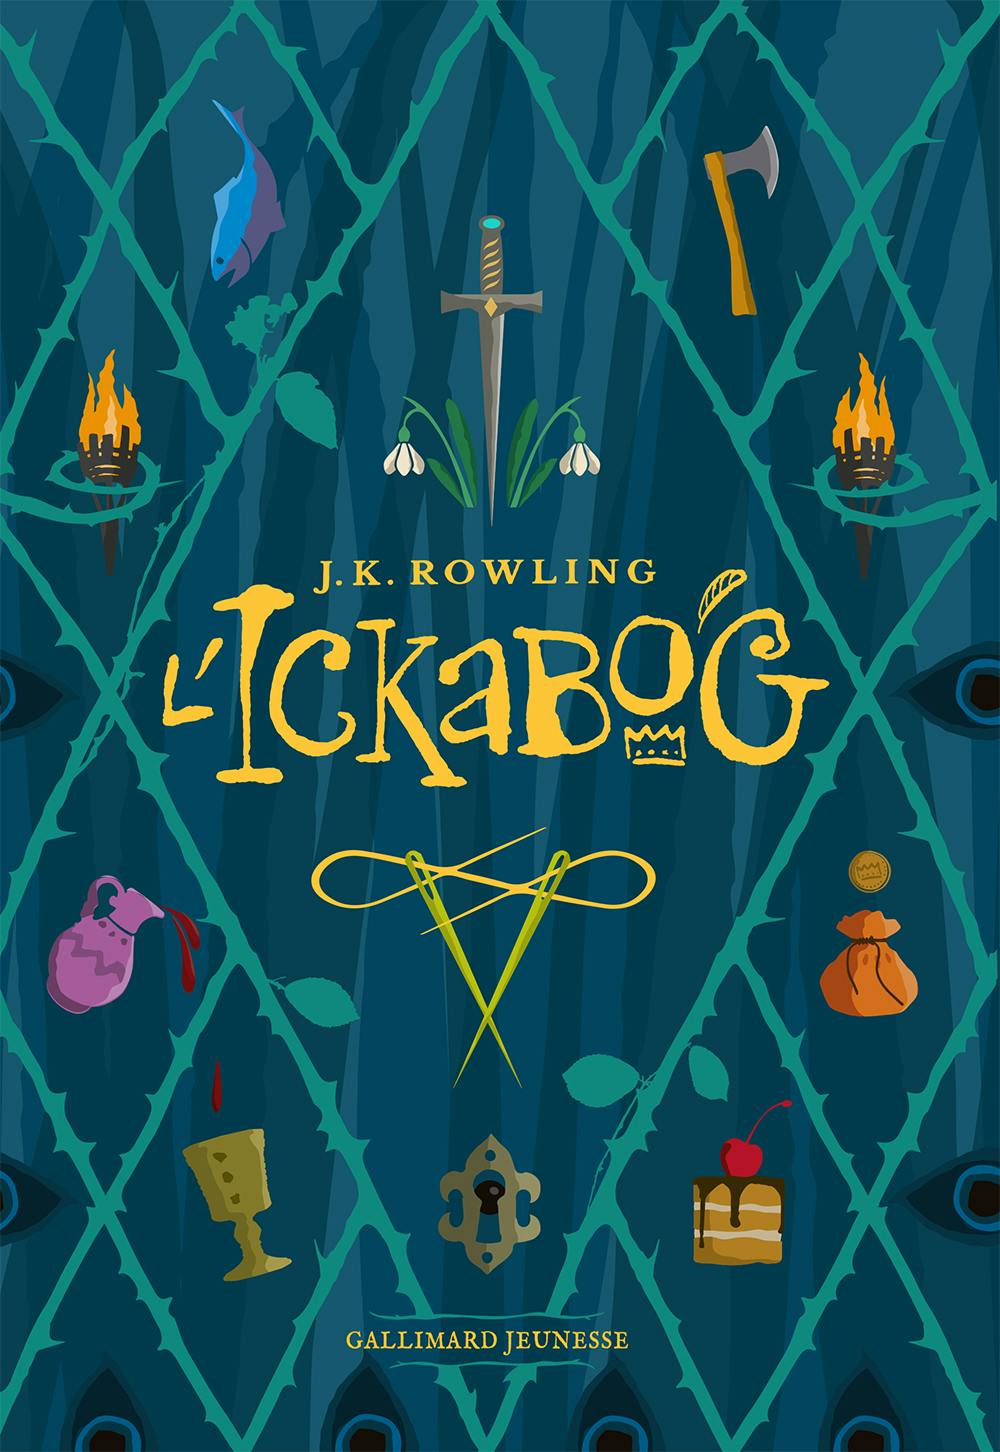 Ickabog nouveau roman de J.K. Rowling couverture